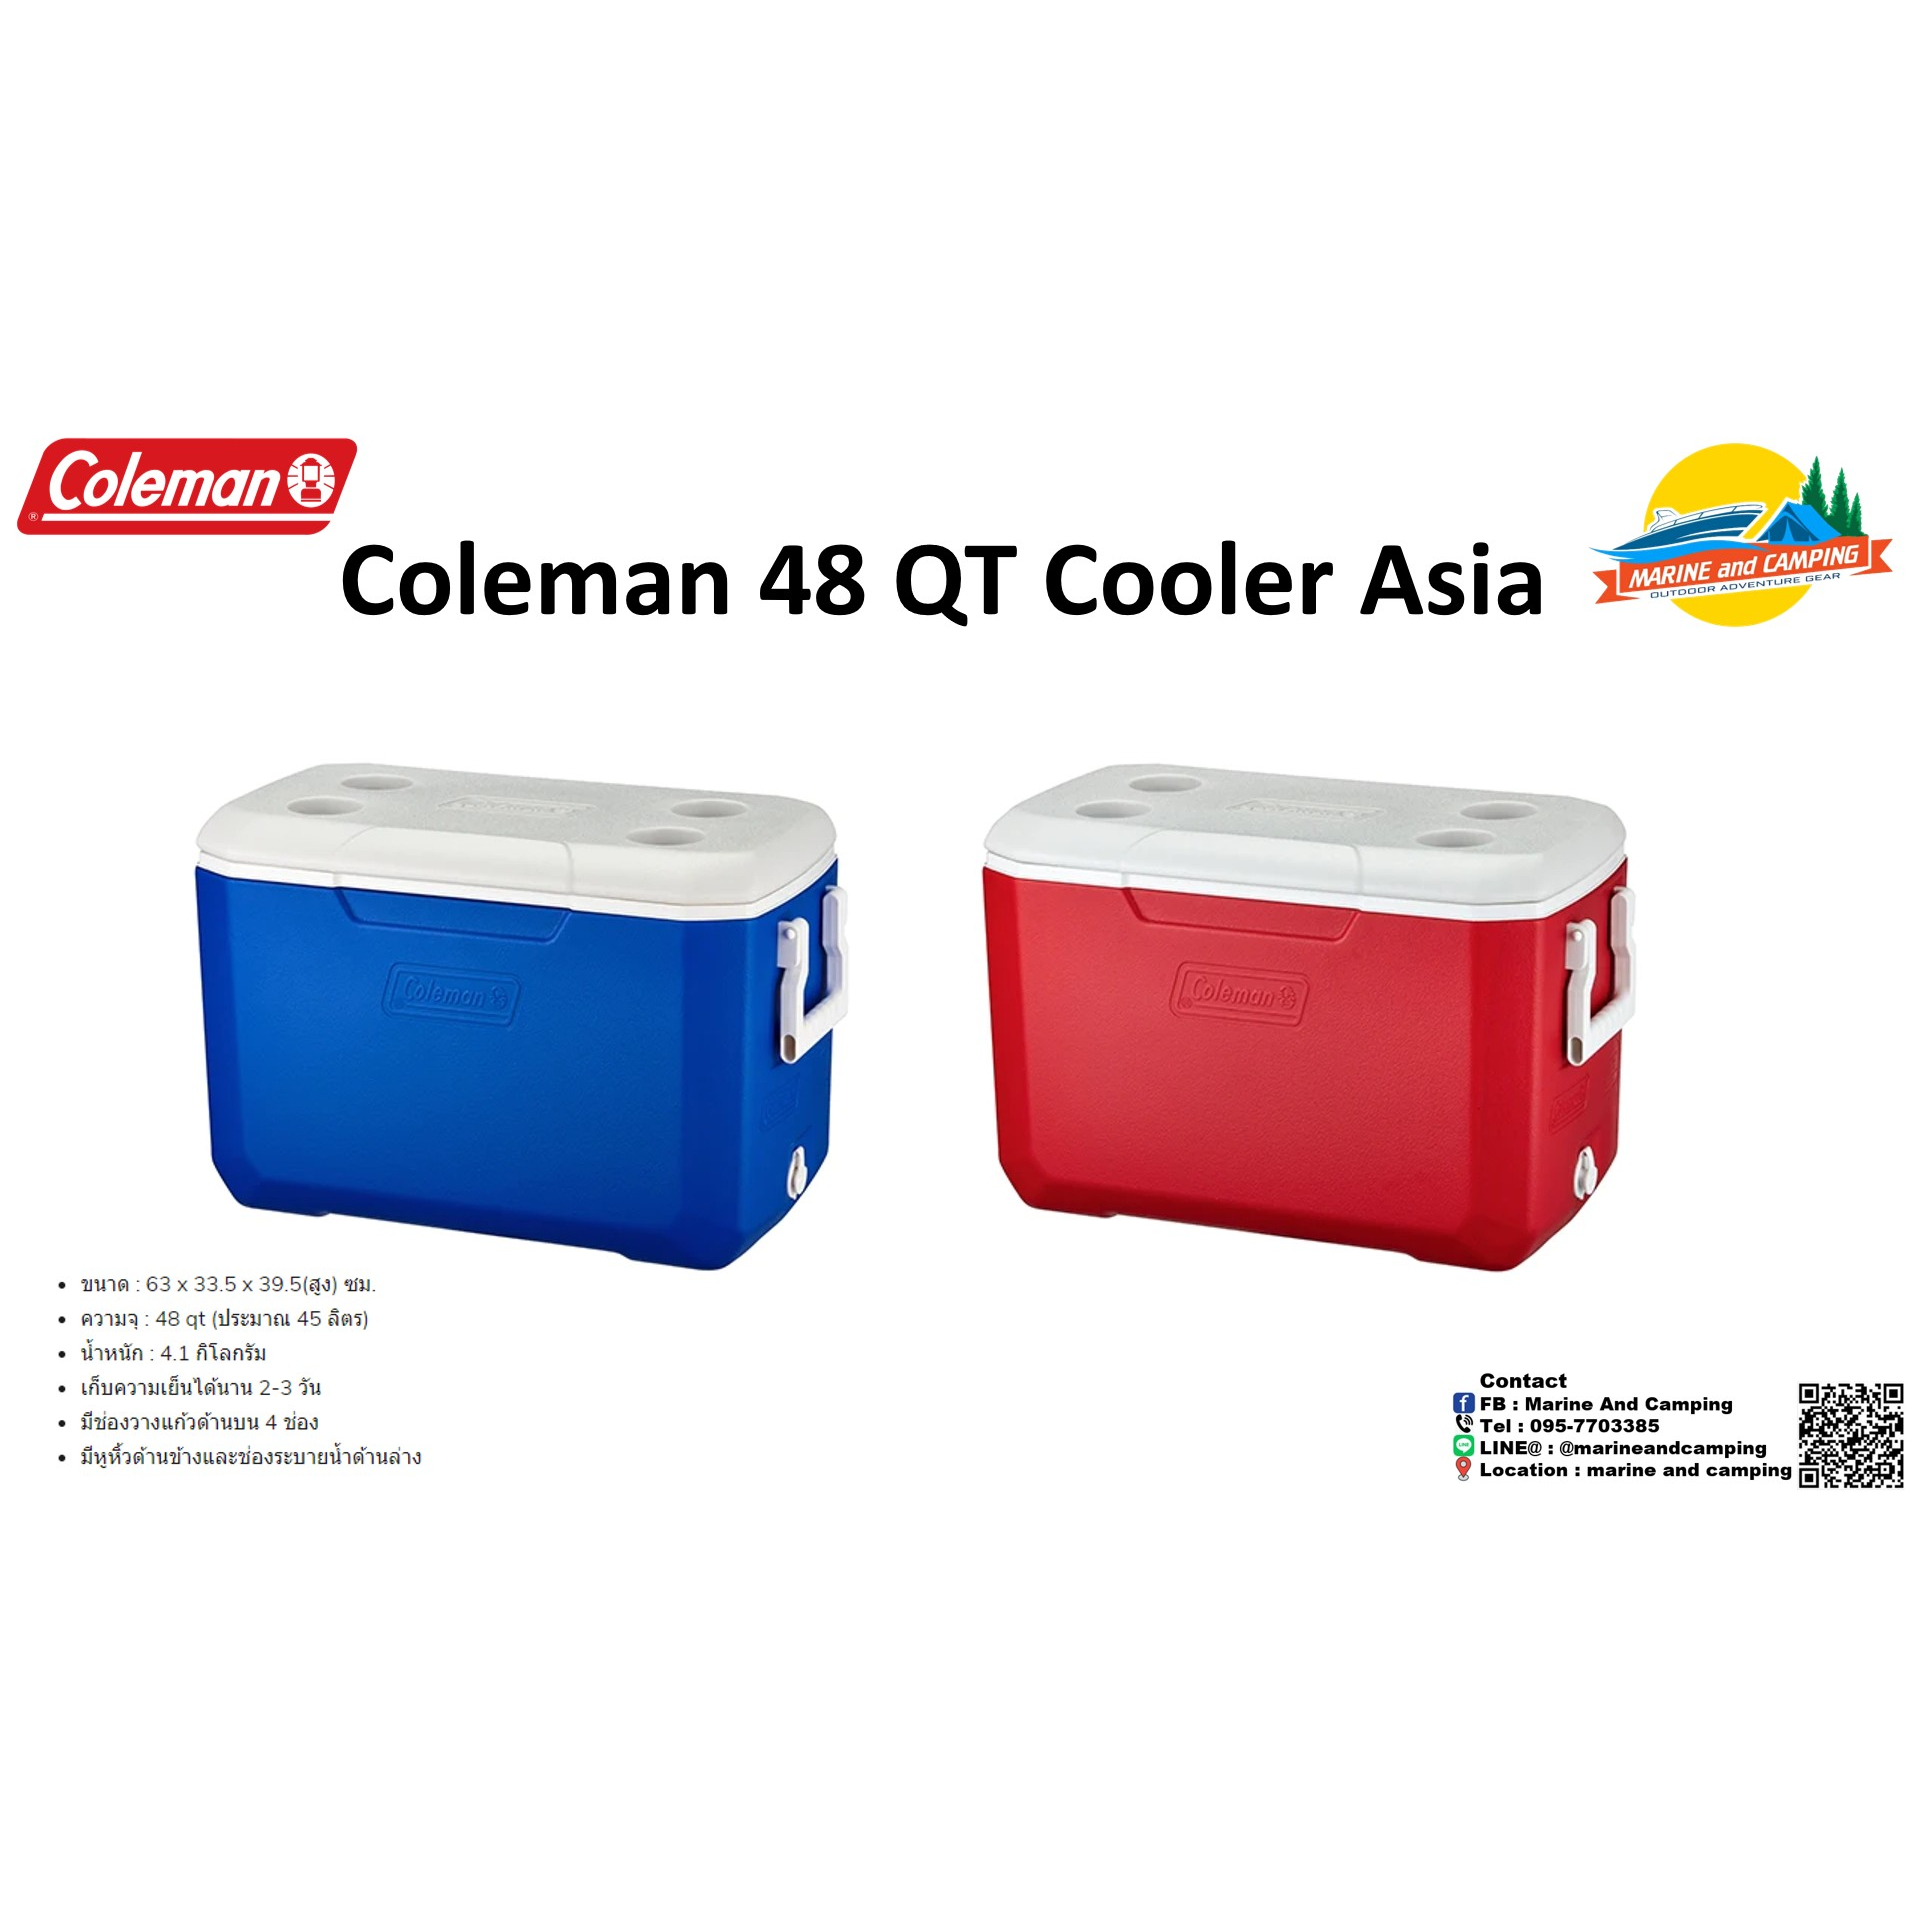 Coleman 48 QT Cooler Asia